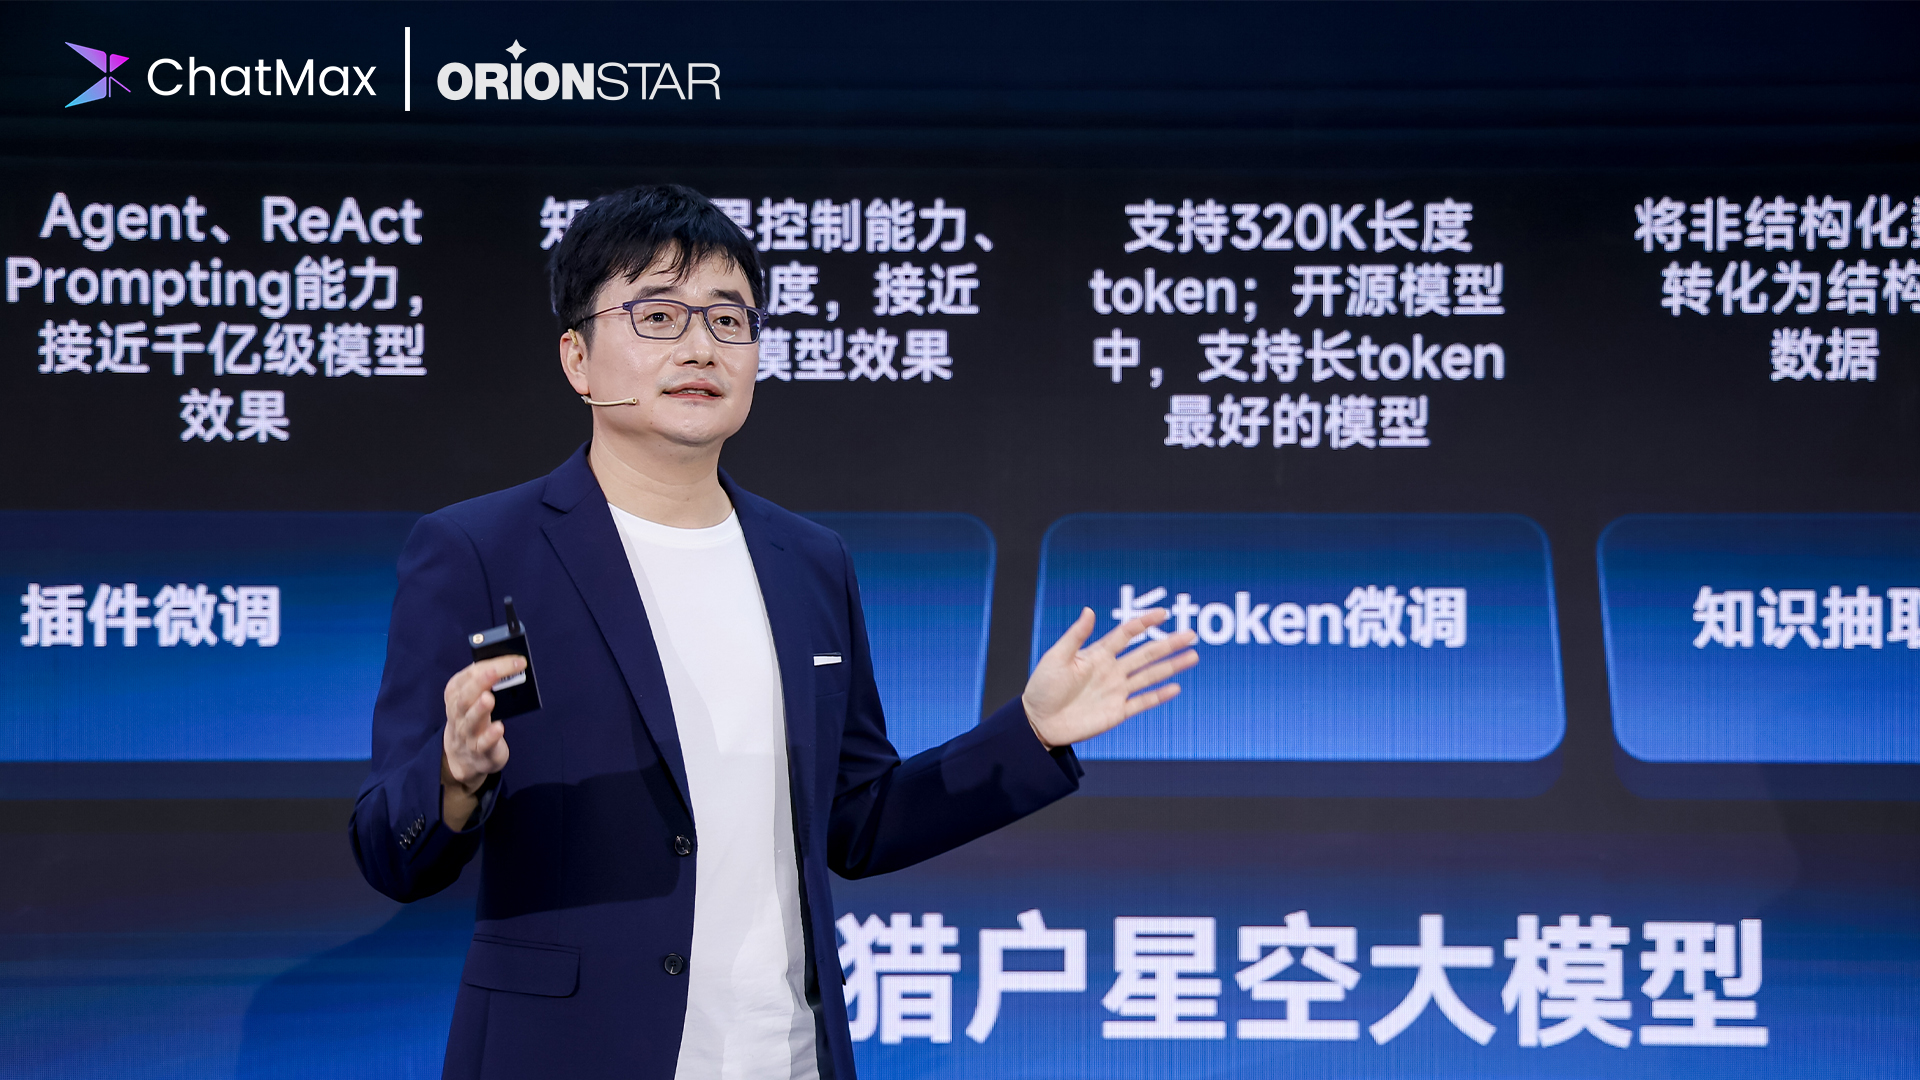 OrionStarはオープンソースのマルチリンガルLLM「Orion-14B」をリリースしました。